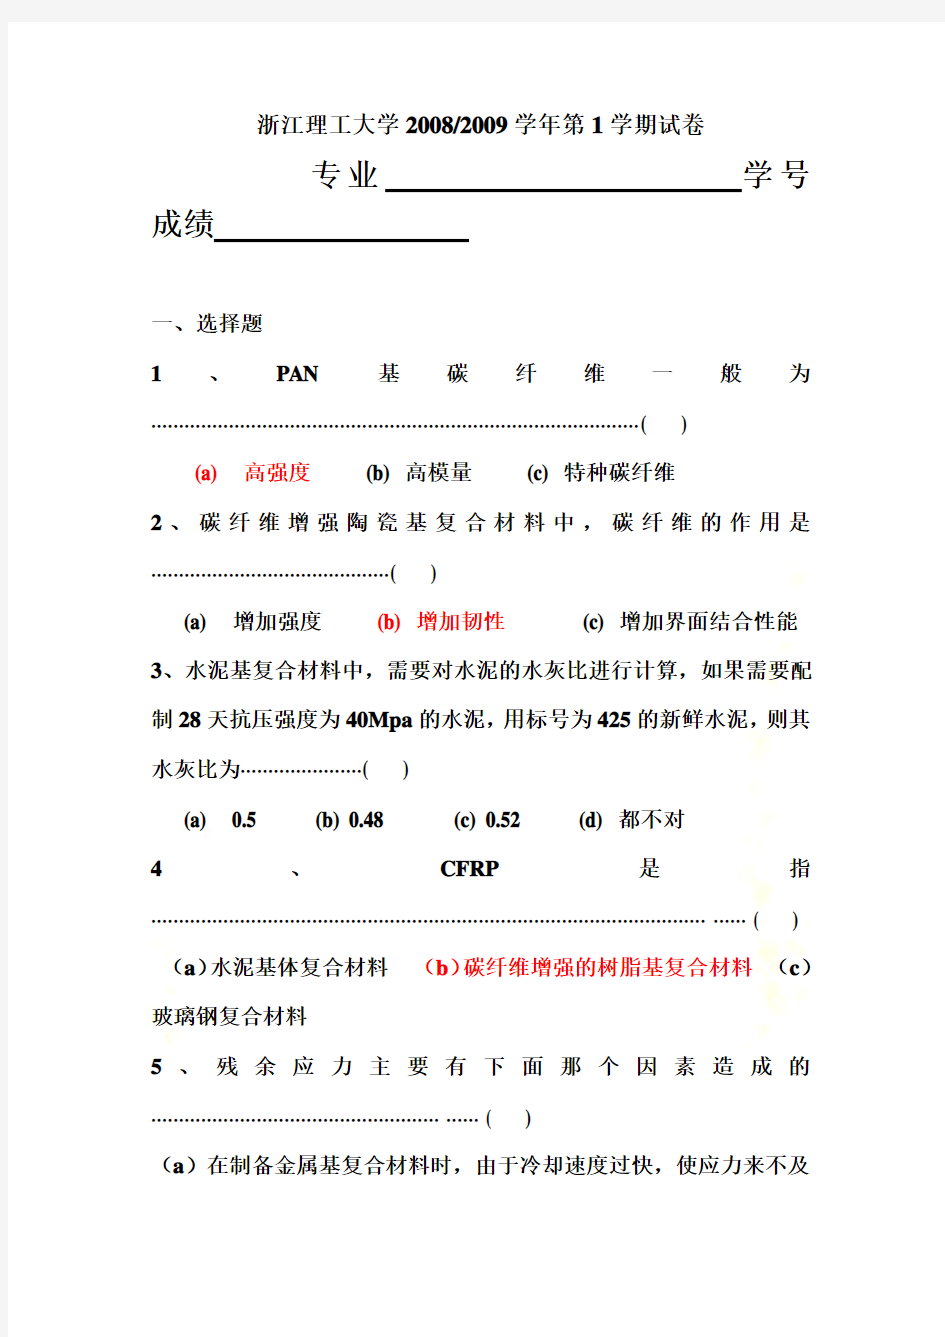 浙江理工大学复合材料学试卷(doc 6页)